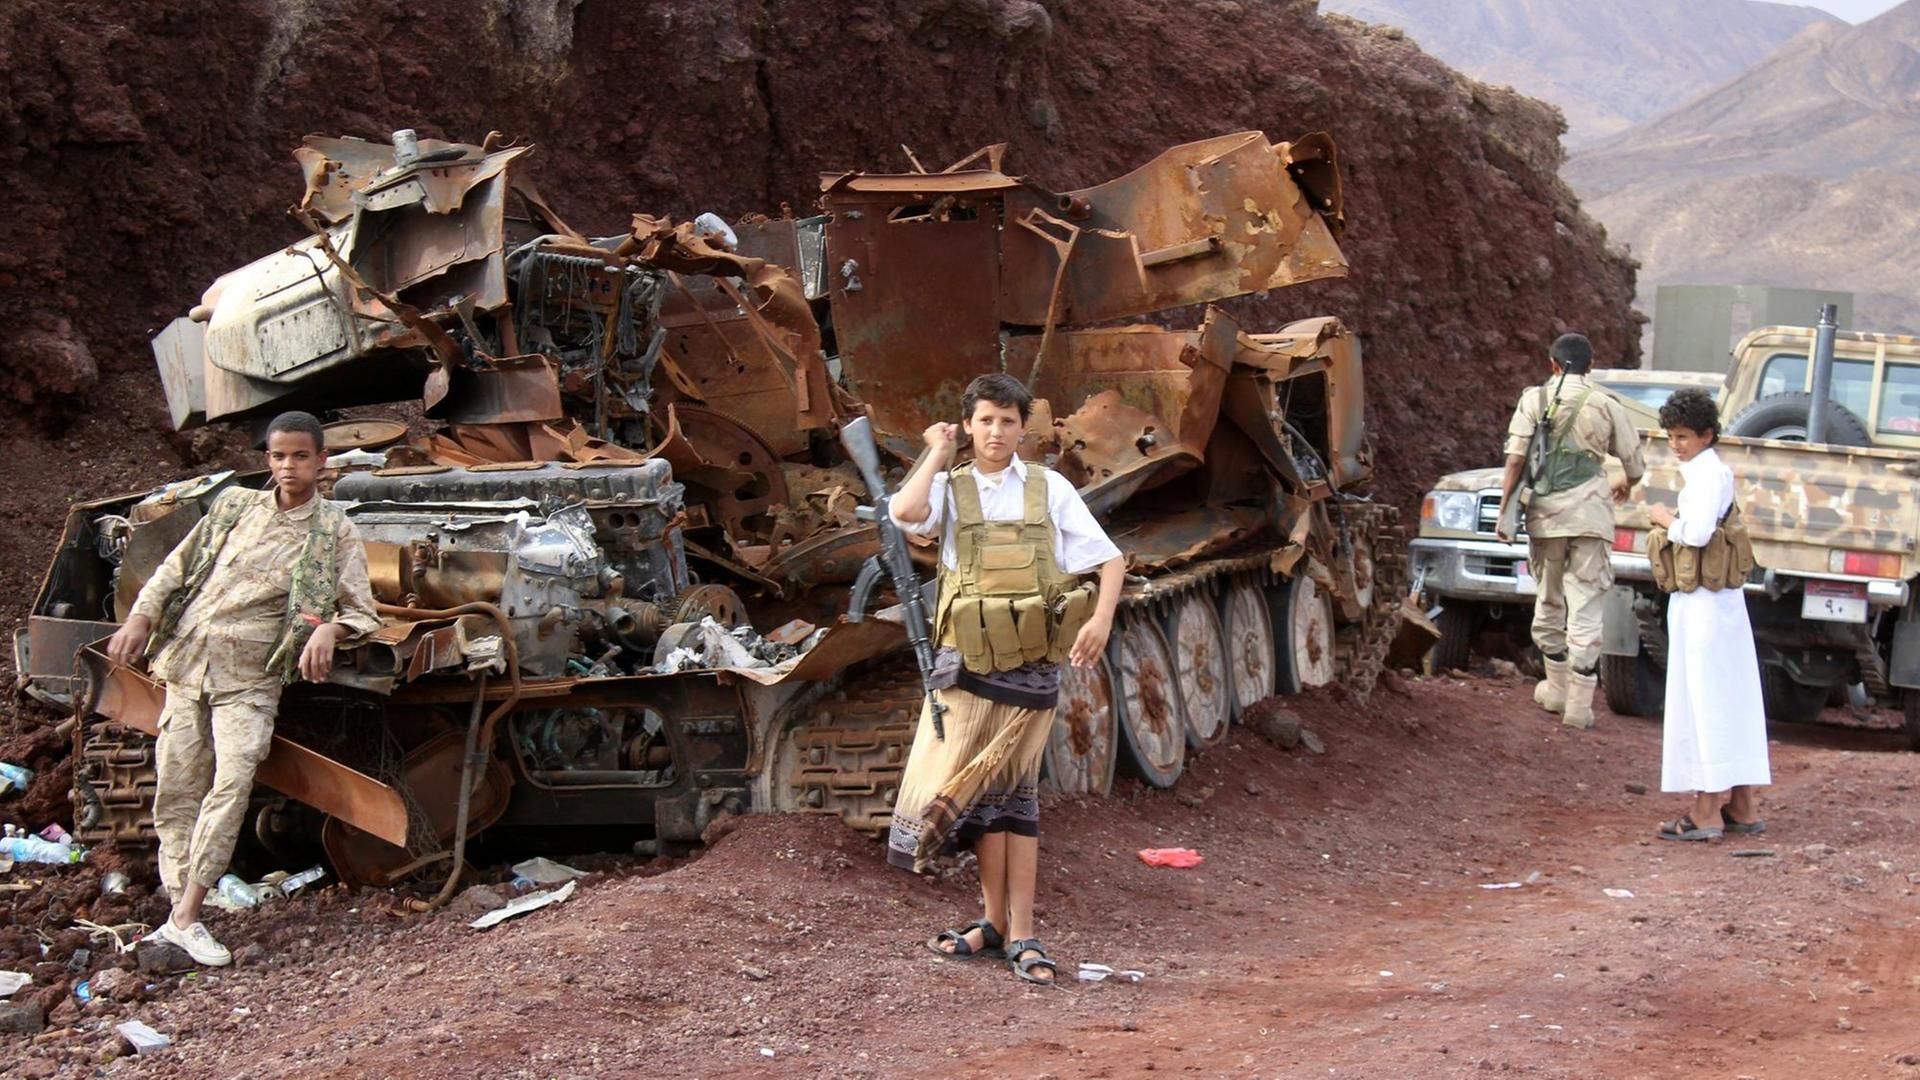 Jemenitische Kämpfer aufseiten des Präsident Abed-Rabbo Mansour Hadi stehen neben einem ausgebrannten Panzer in der Region Sirwah in der Provinz Marib.